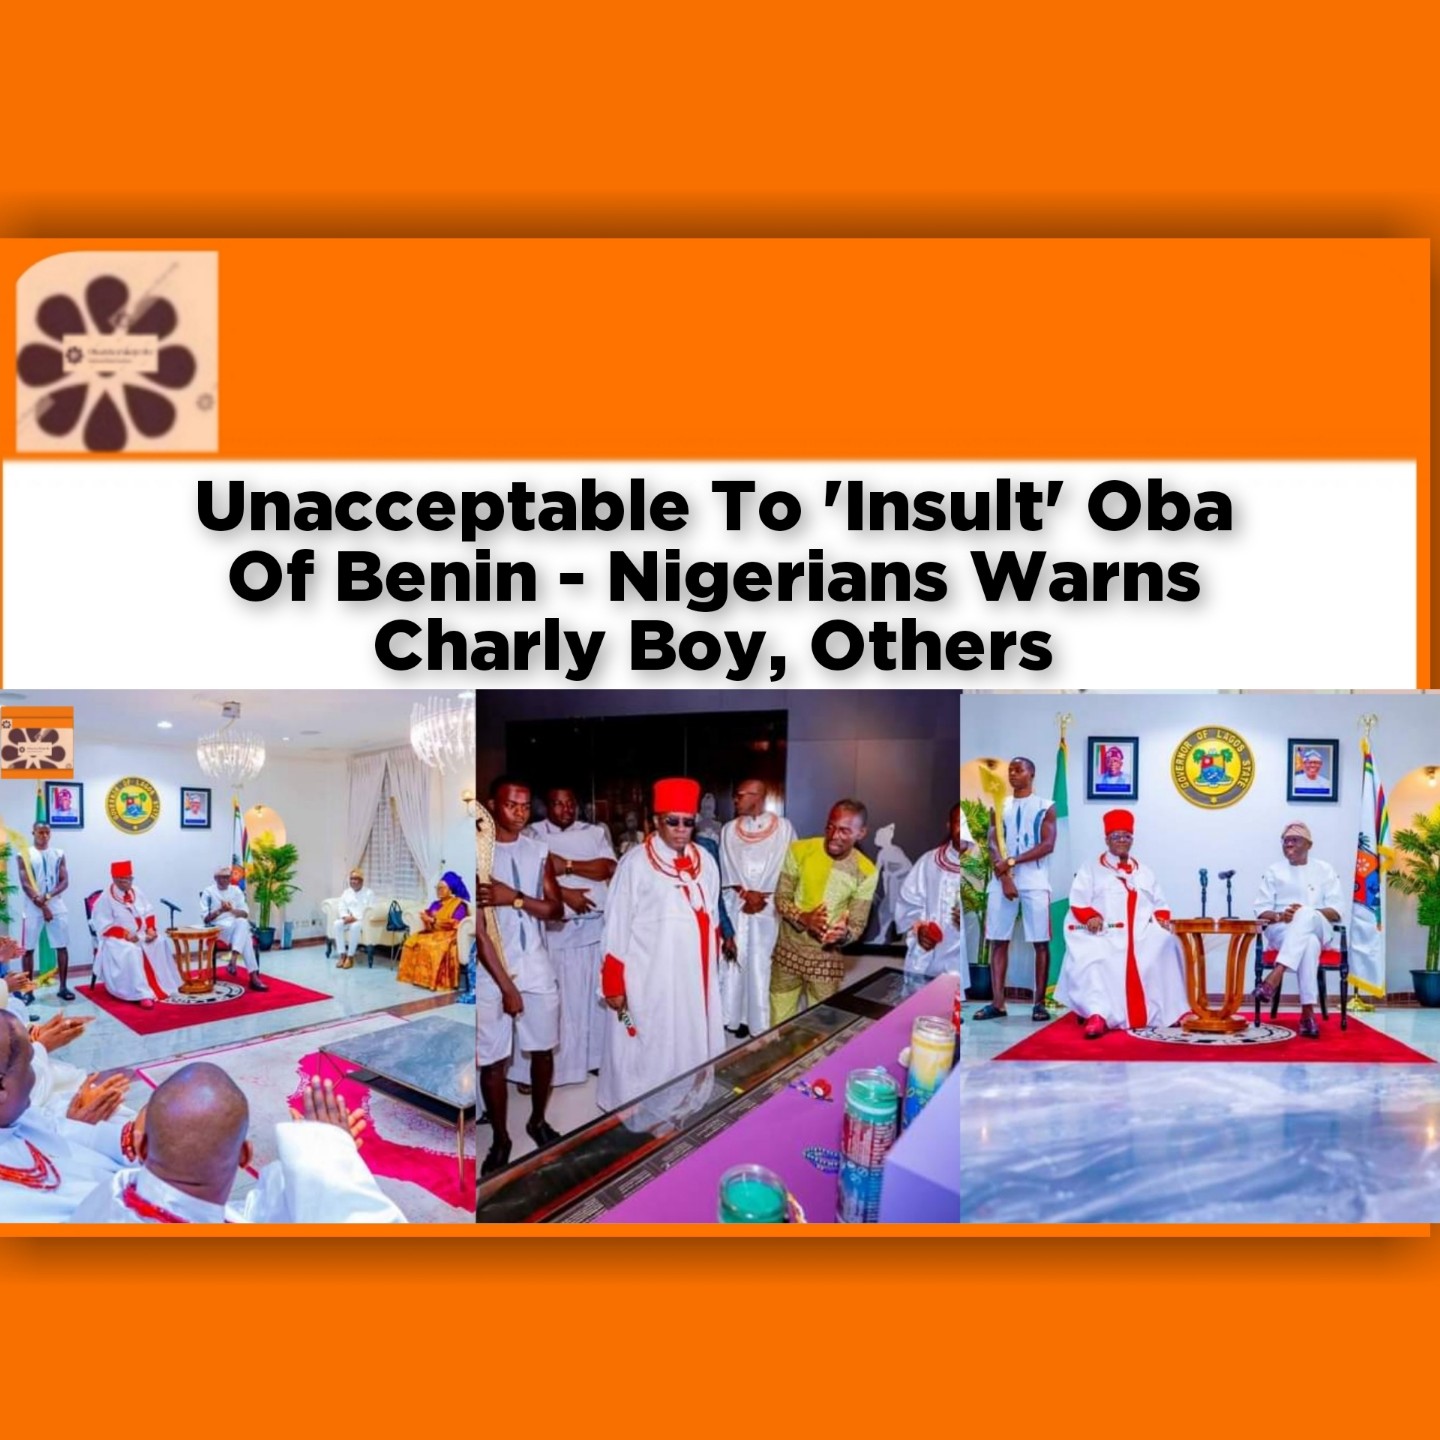 Unacceptable To 'Insult' Oba Of Benin - Nigerians Warns Charly Boy, Others ~ OsazuwaAkonedo #Biden